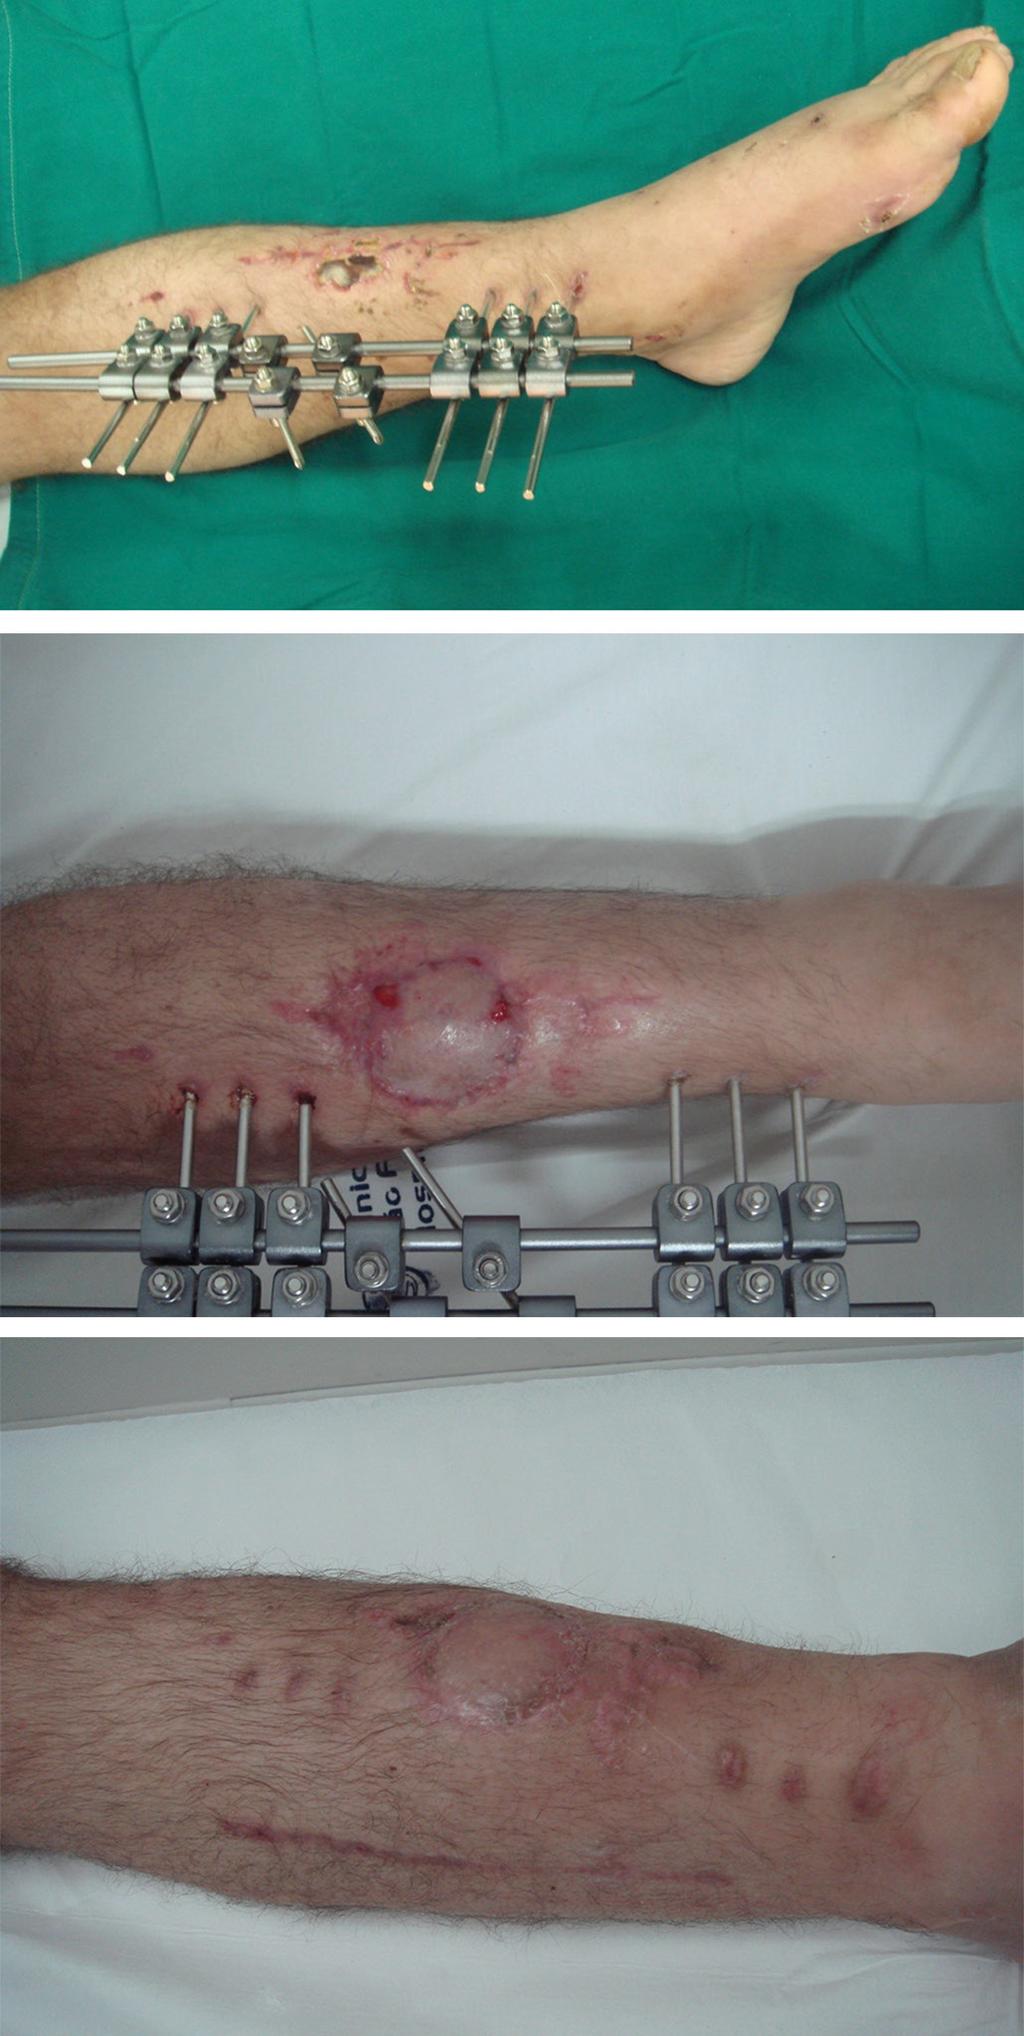 a confecção do retalho variou de 4 a 28 dias (tempo médio de 17,7 dias). Todos os pacientes evoluíram com cicatrização completa da ferida.